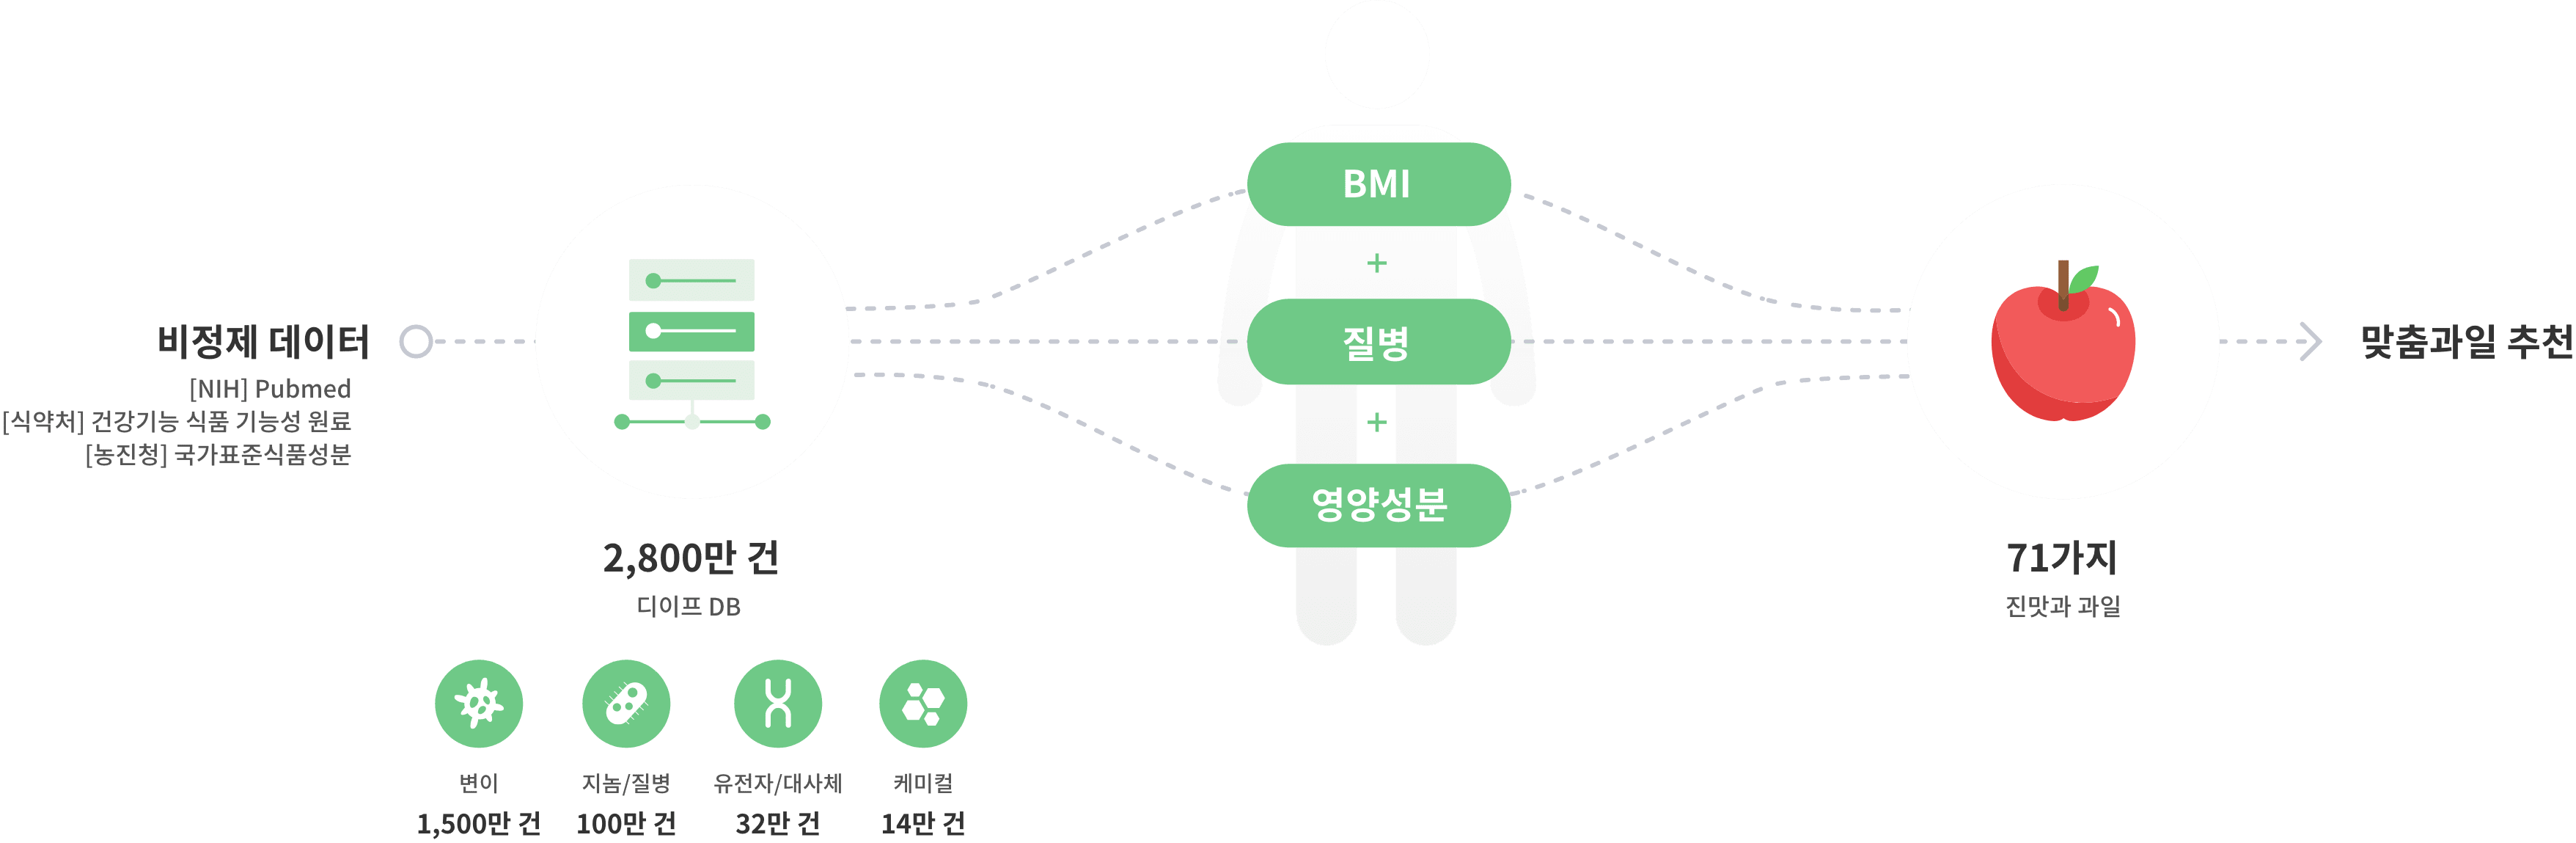 비정제 데이터 2,730만건 -> BMI + 질병 + 영양성분 -> 71가지 맞춤과일 배송